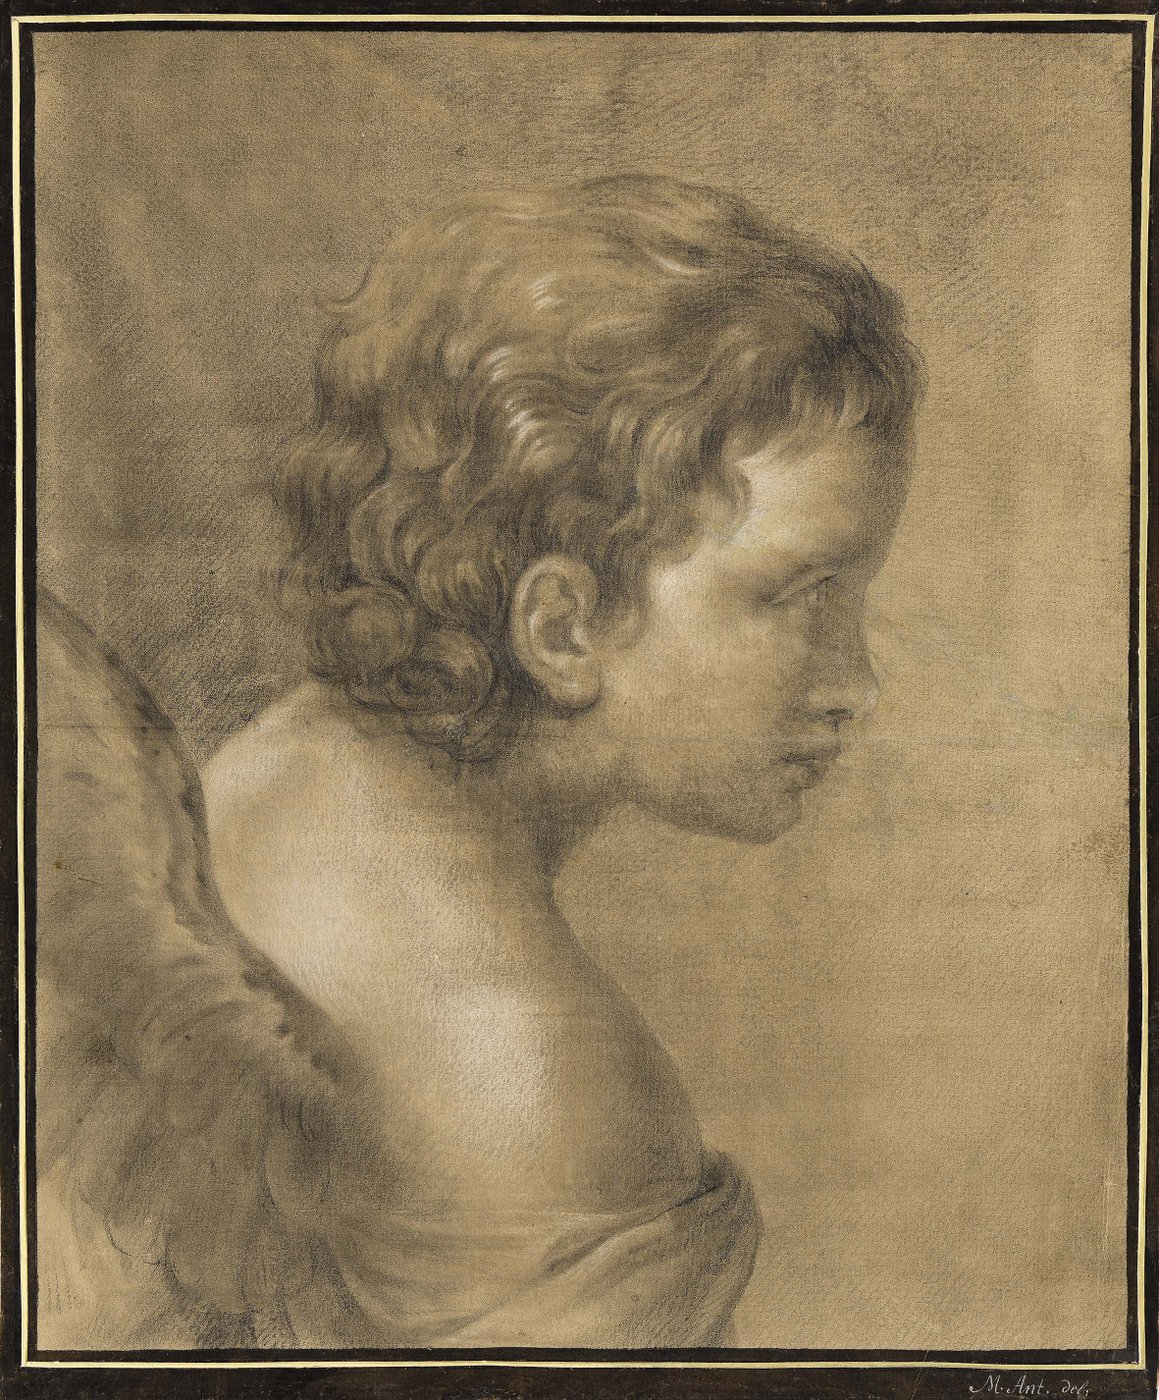 : Brustbild eines Engels – ein Kind mit Flügeln und lockigem Haar –, im Profil nach rechts schauend.